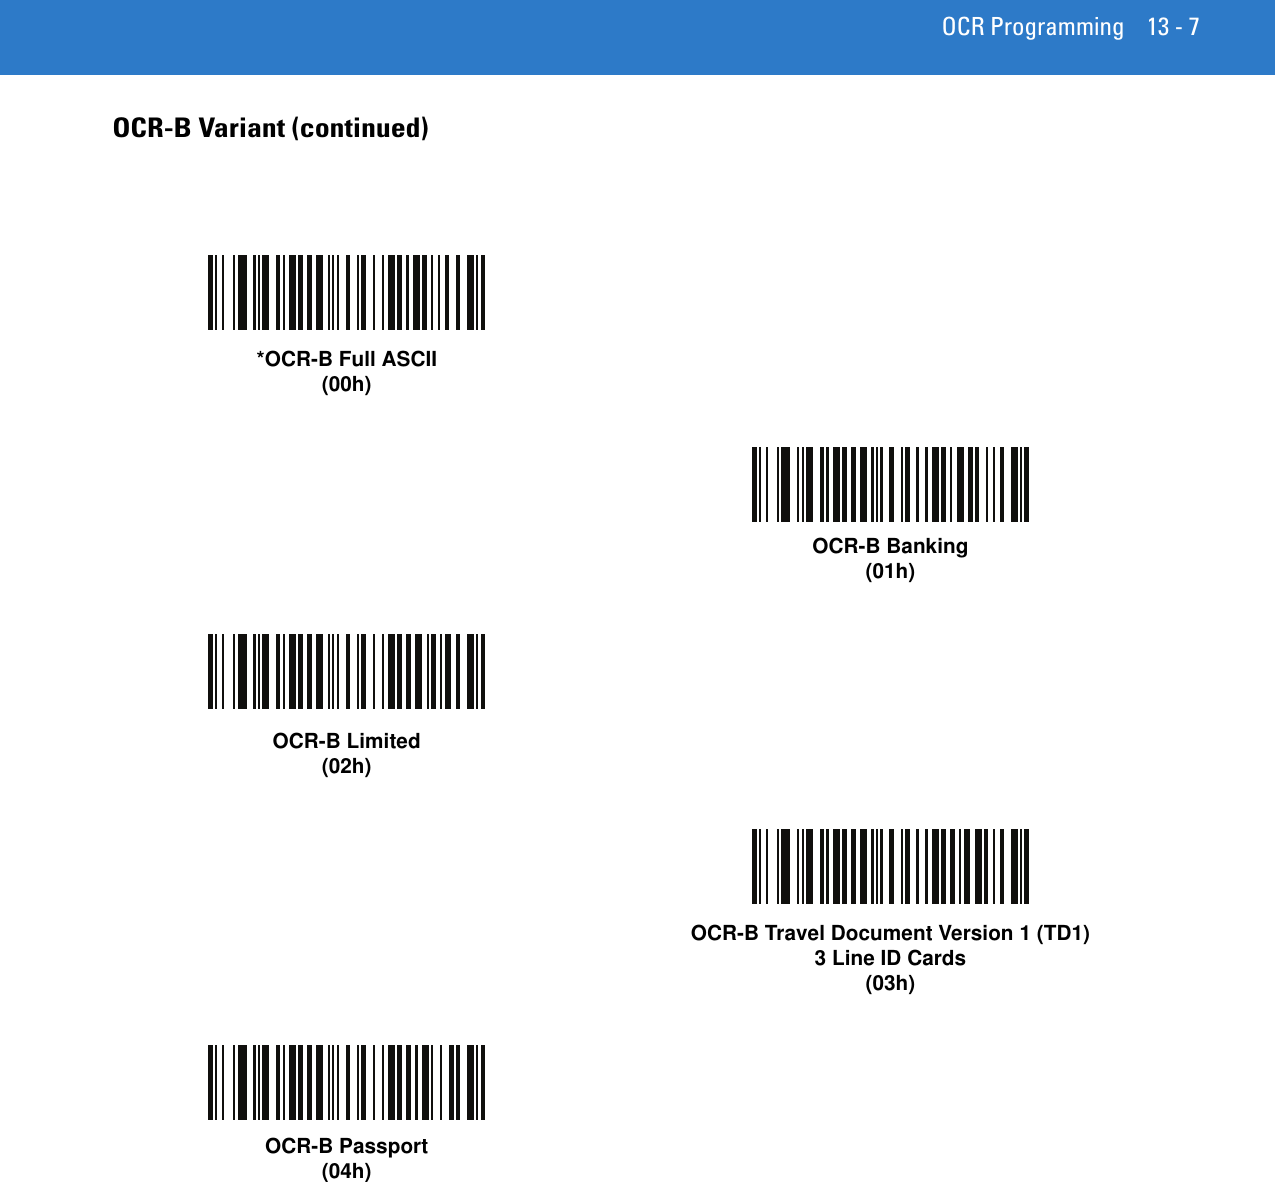 OCR Programming 13 - 7OCR-B Variant (continued)*OCR-B Full ASCII(00h)OCR-B Banking(01h)OCR-B Limited(02h)OCR-B Travel Document Version 1 (TD1)3 Line ID Cards(03h)OCR-B Passport(04h)